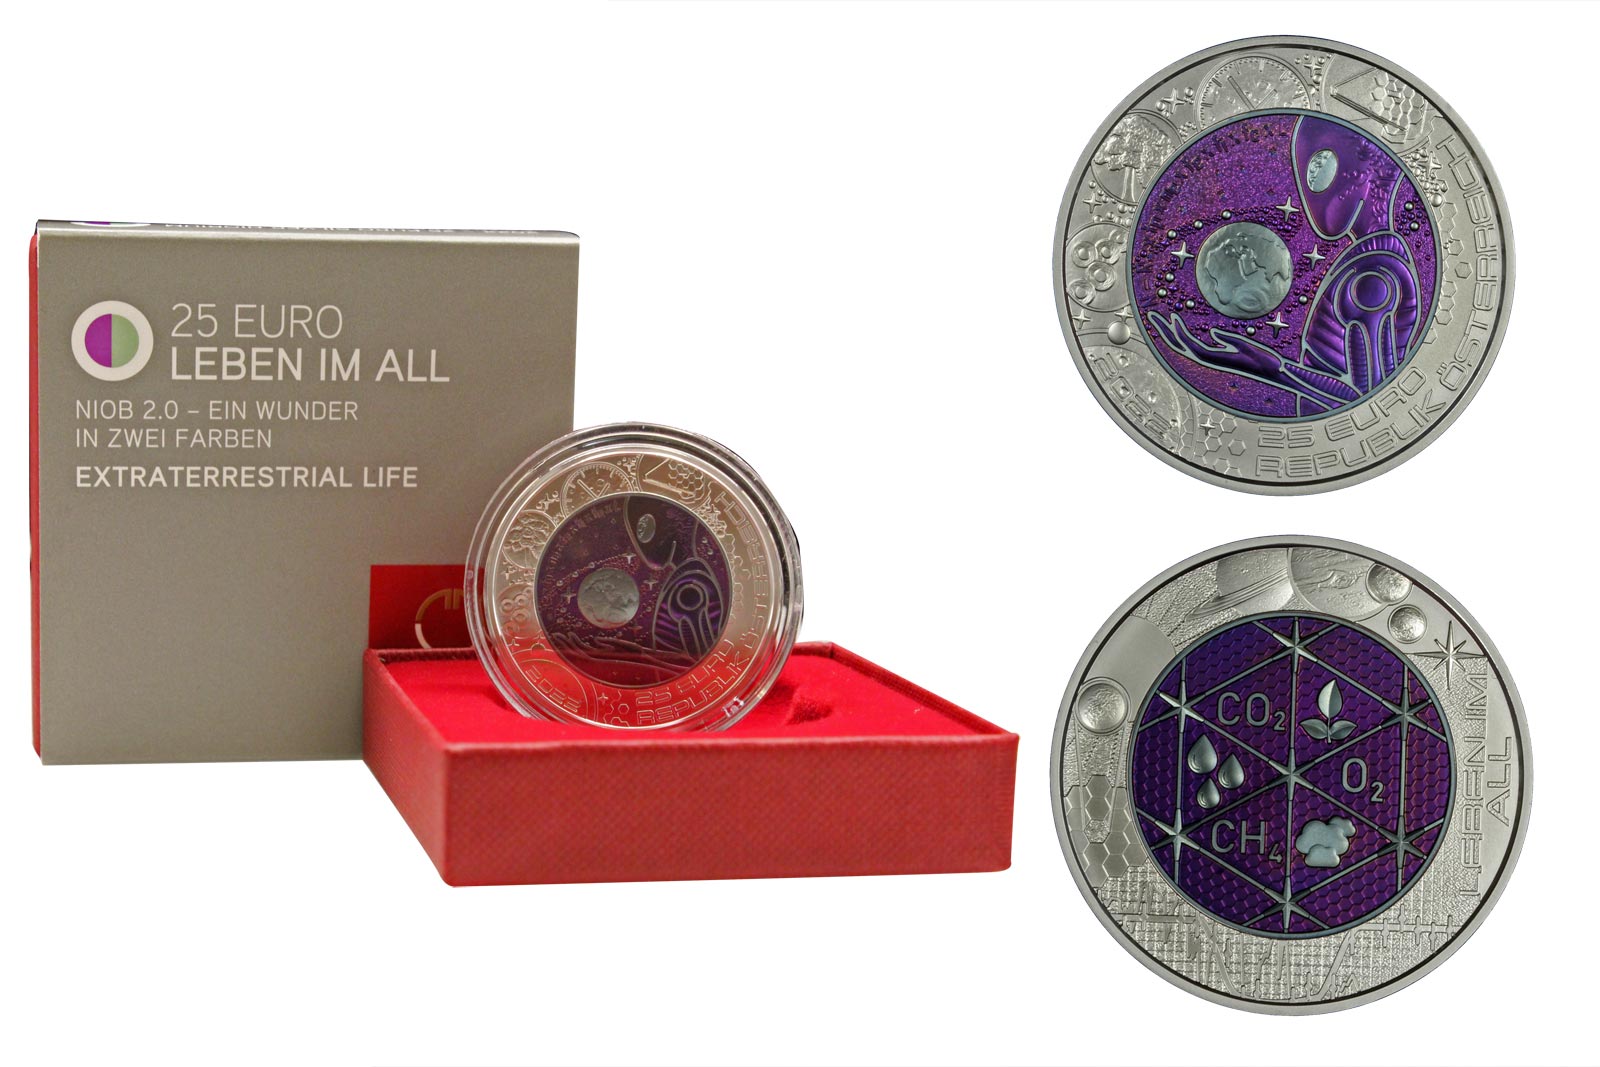 "Vita Extraterrestre" - Moneta da 25 euro in argento 900/000 e niobio con dettagli colorati